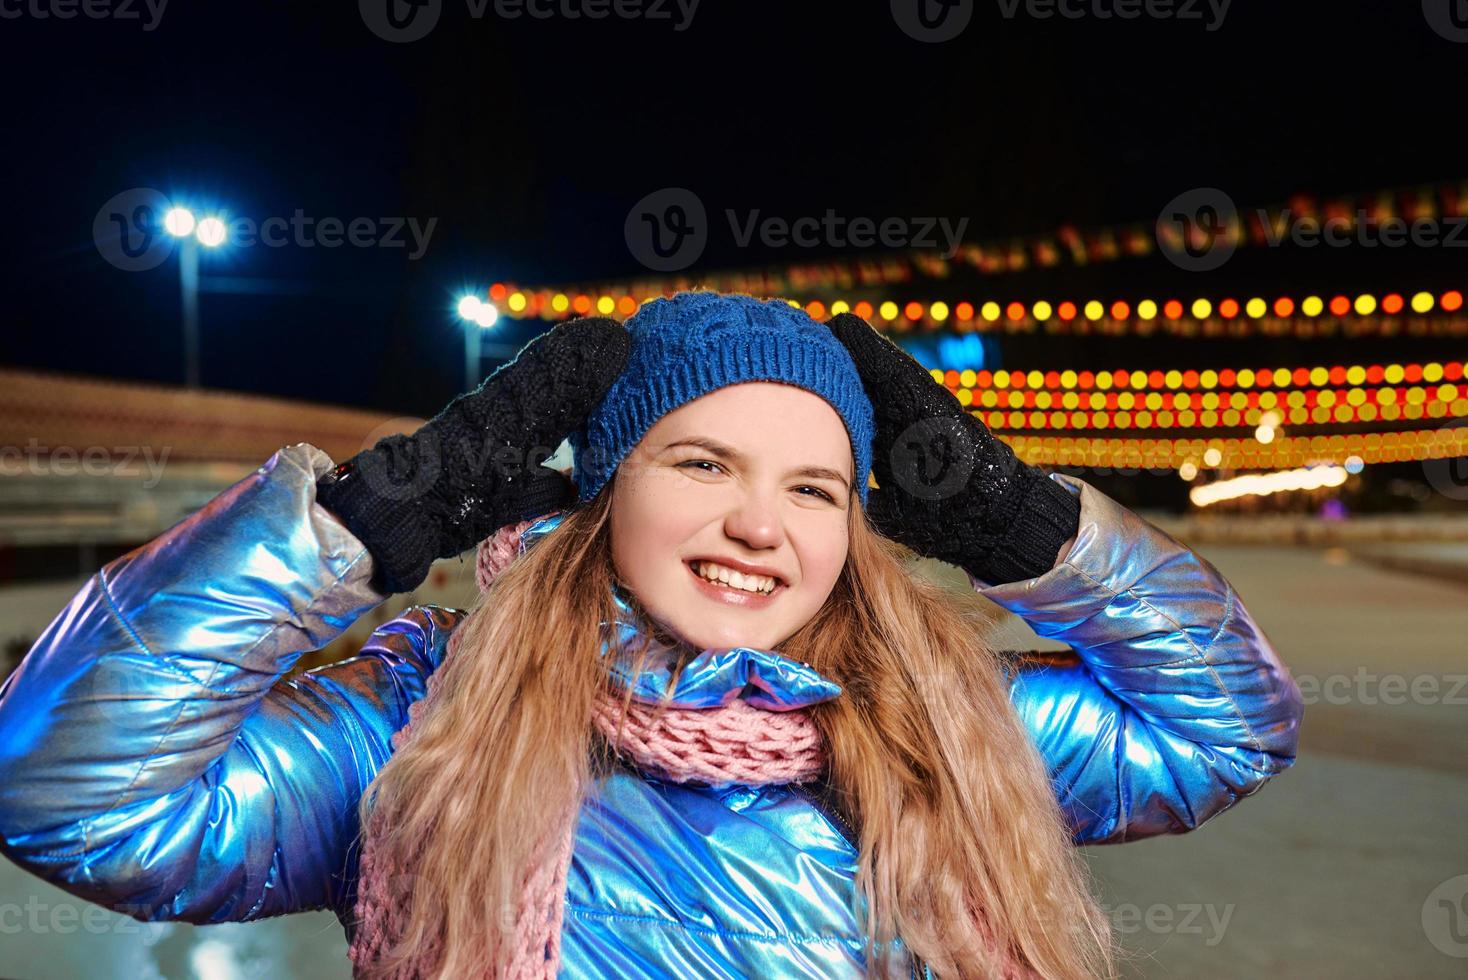 heureuse jeune femme caucasienne souriante en écharpe, chapeau, veste, mitaines près de la patinoire extérieure. nouvel an, amusement, concept d'hiver photo